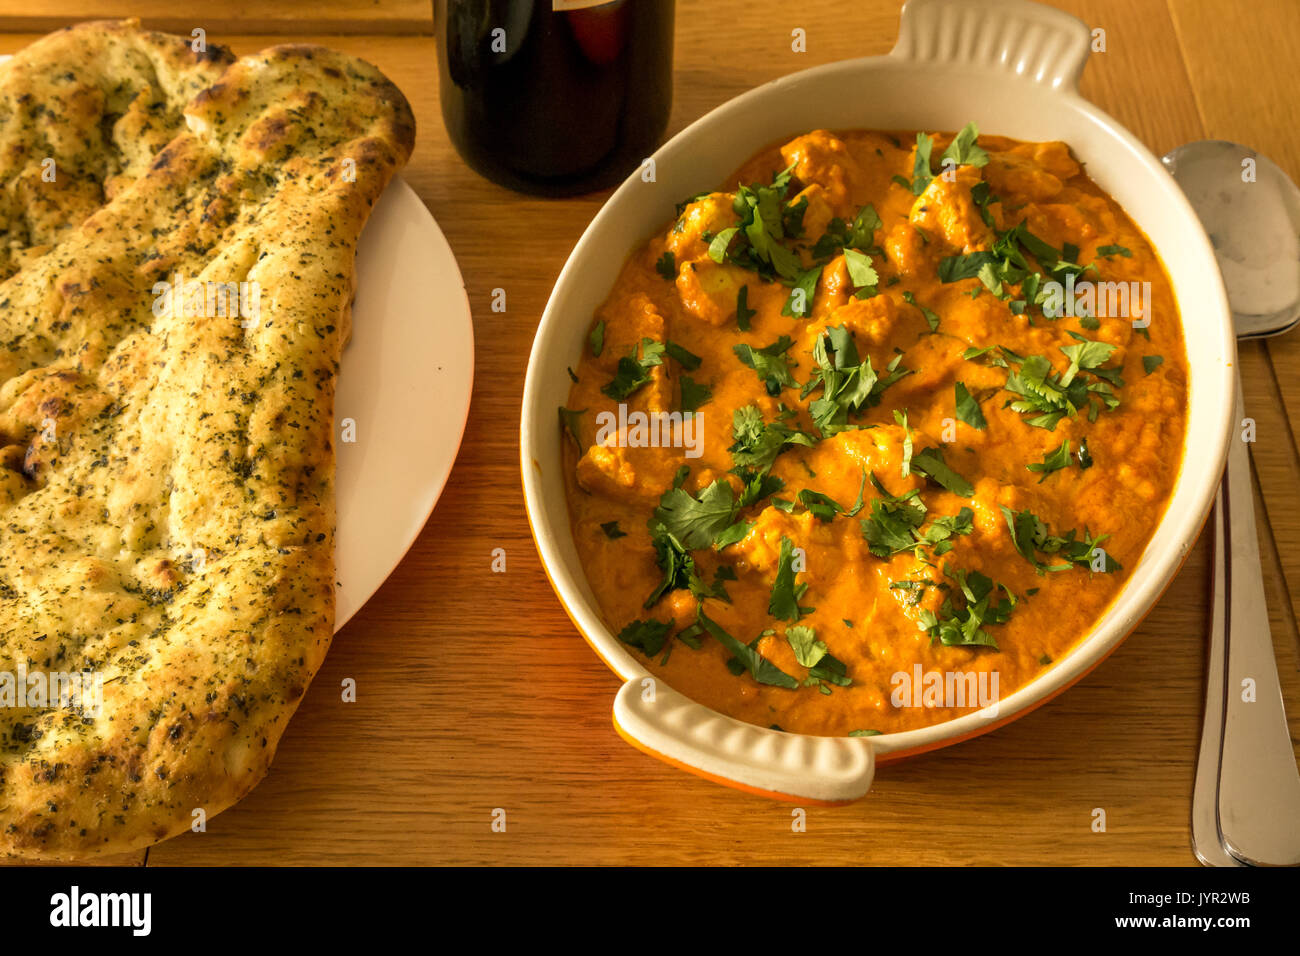 In der Nähe der Schüssel vom Huhn mit Naan Brot und eine Flasche Rotwein auf Eiche Tisch curry Stockfoto